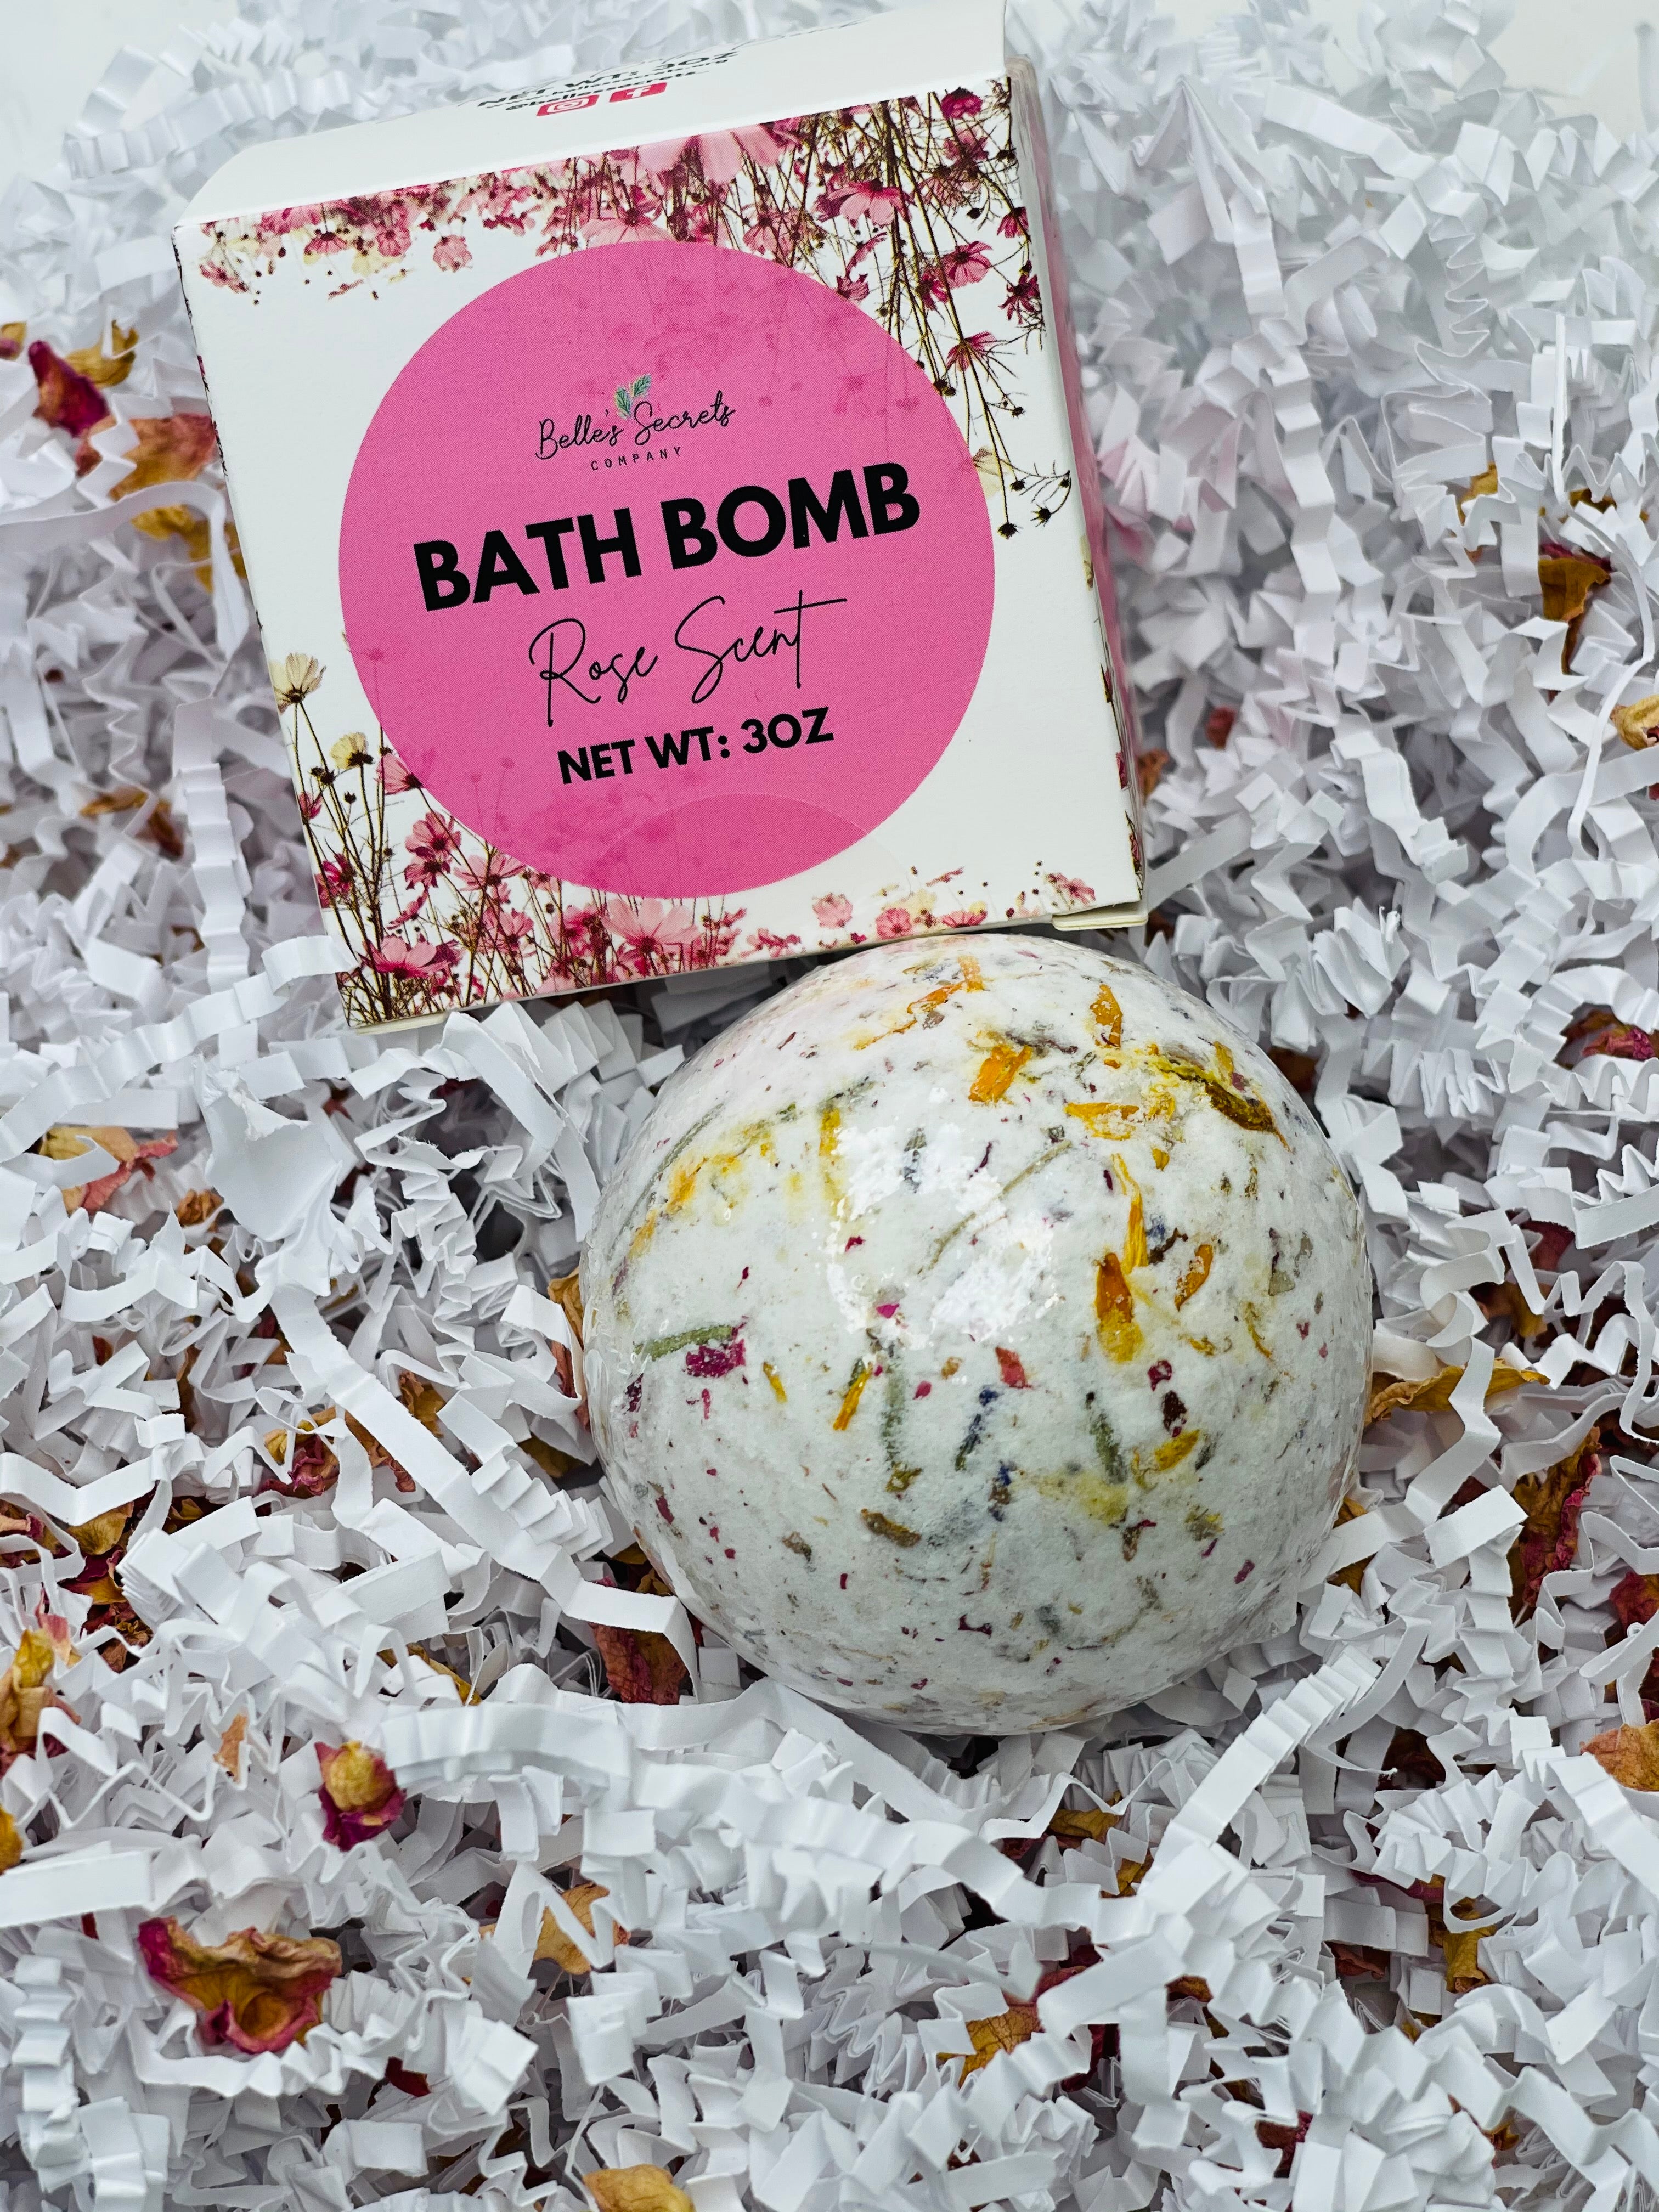 Rose Yoni Bath Bomb